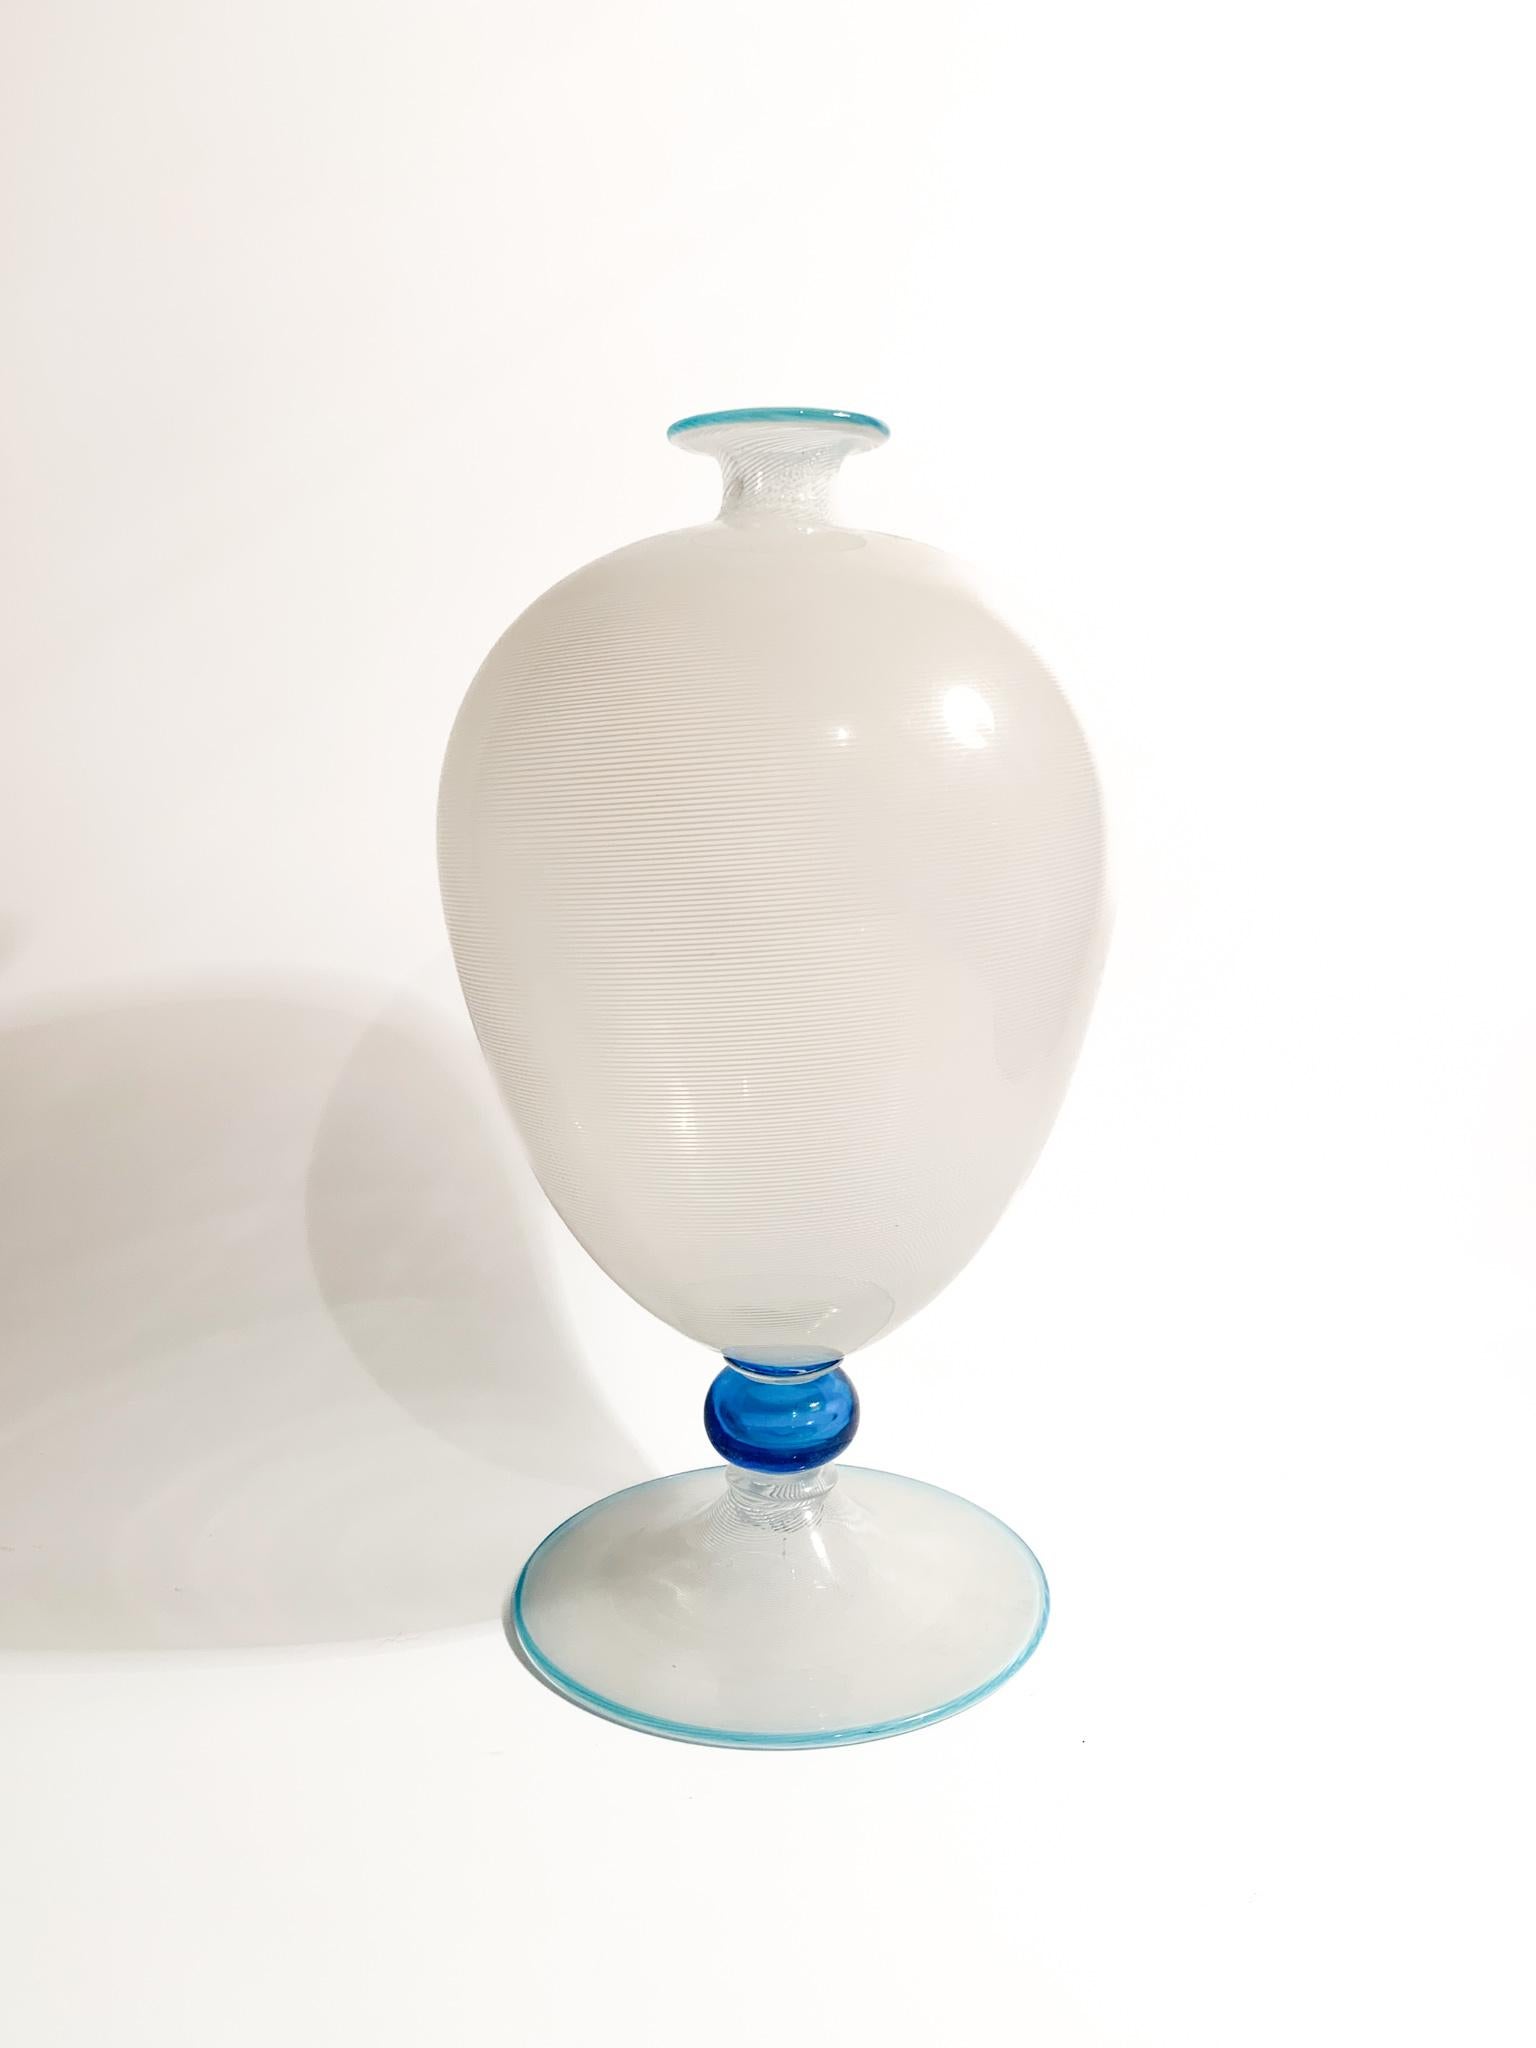 Vase modèle Veronese en verre de Murano blanc et bleu clair, réalisé avec la technique du filigrane par Barovier&Toso dans les années 1950.

Ø 16 cm h 30 cm

Barovier&Toso est une verrerie, connue pour ses collections artisanales de verre décoratif